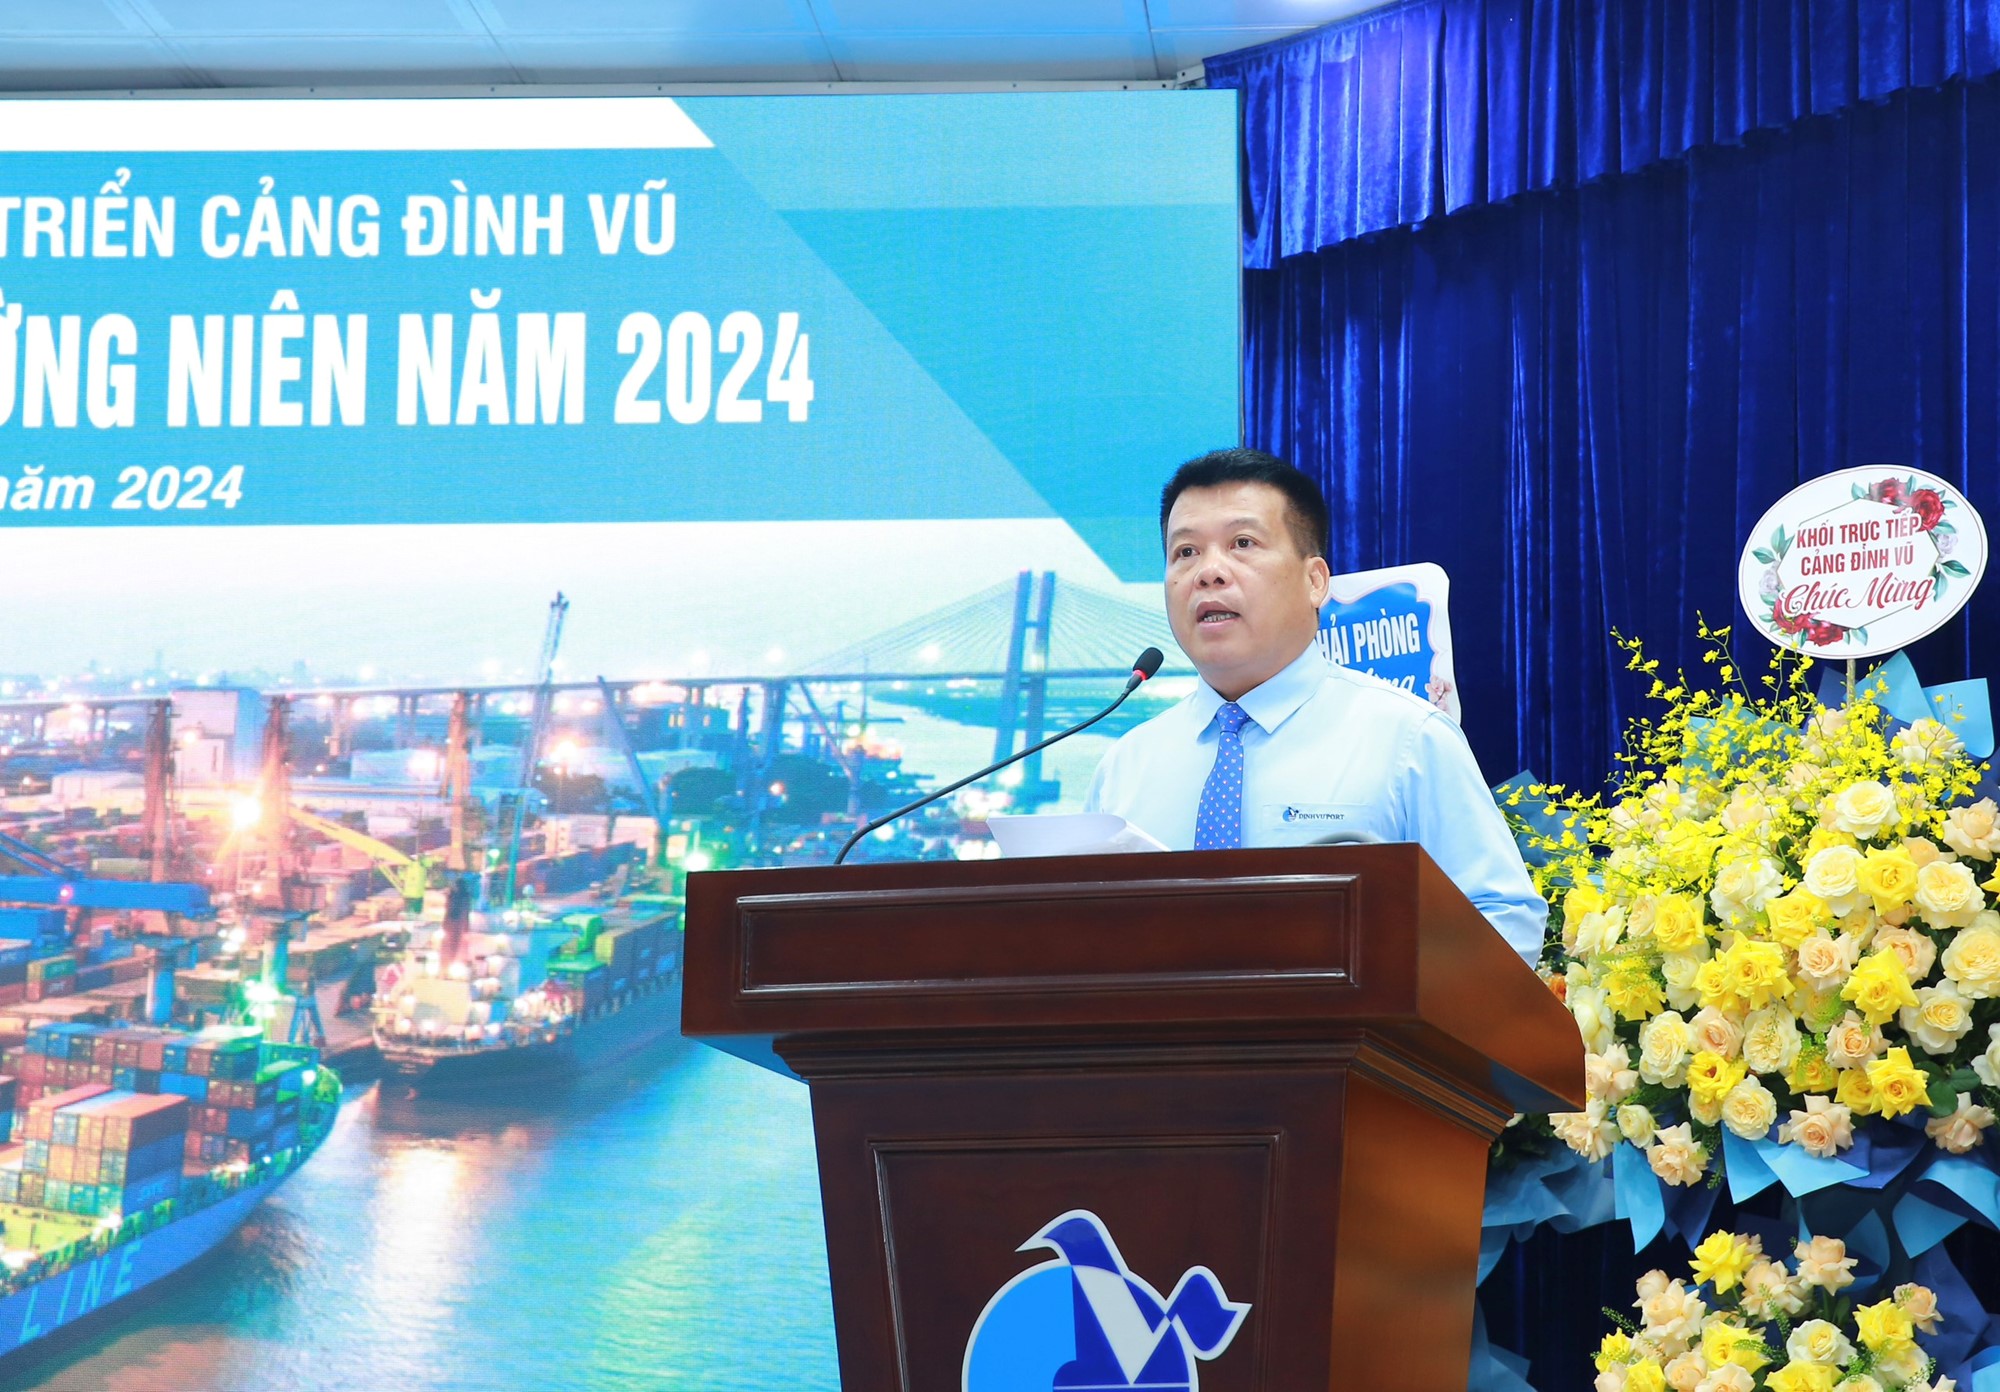 Ông Cao Văn Tĩnh - Tổng Giám đốc Cảng Đình Vũ trình bày các nội dung tại Đại hội